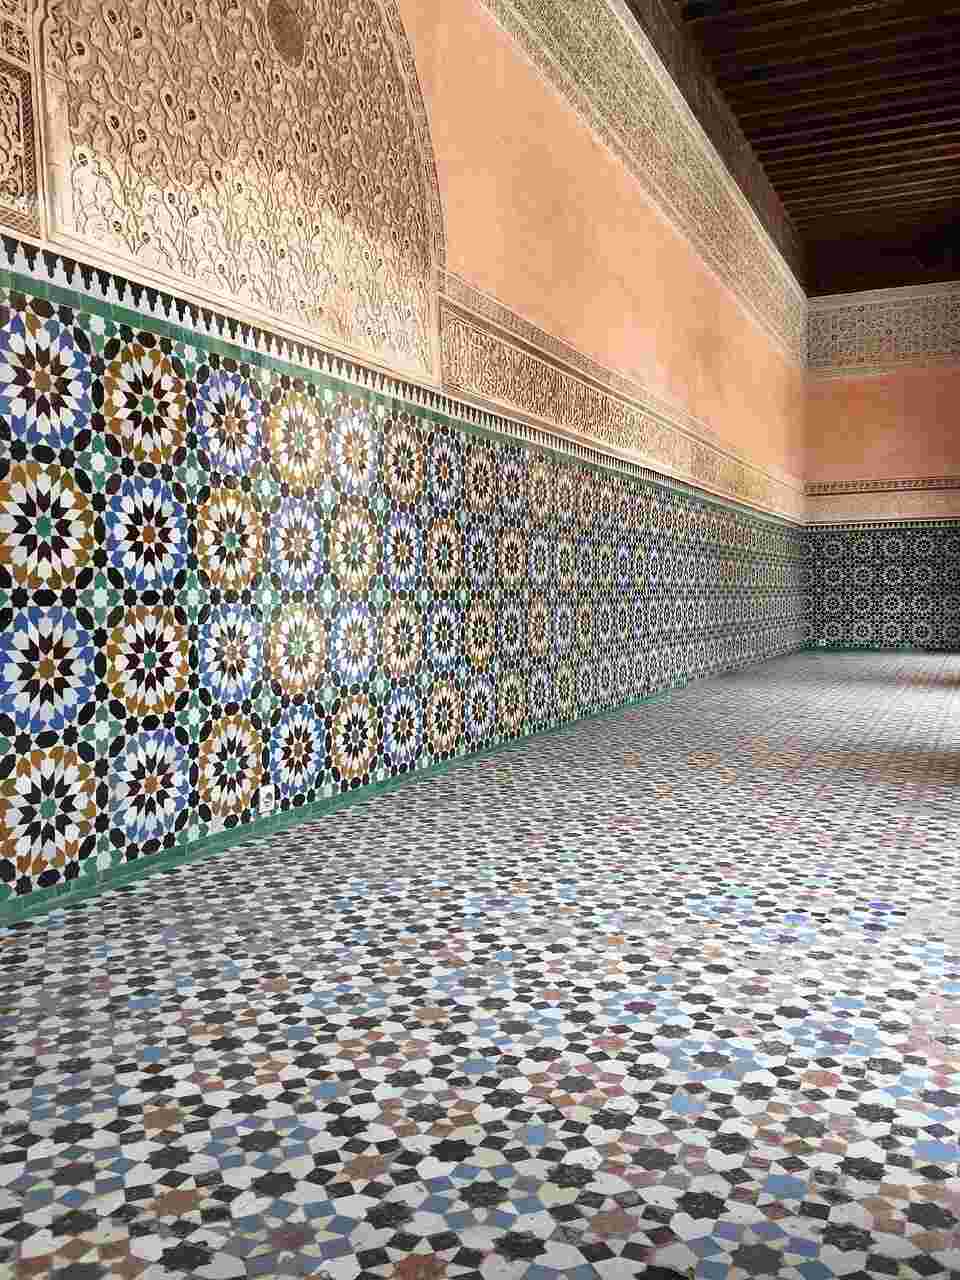 platre-et-zellige-de-l'architecture-mauresque-marrakech-maroc